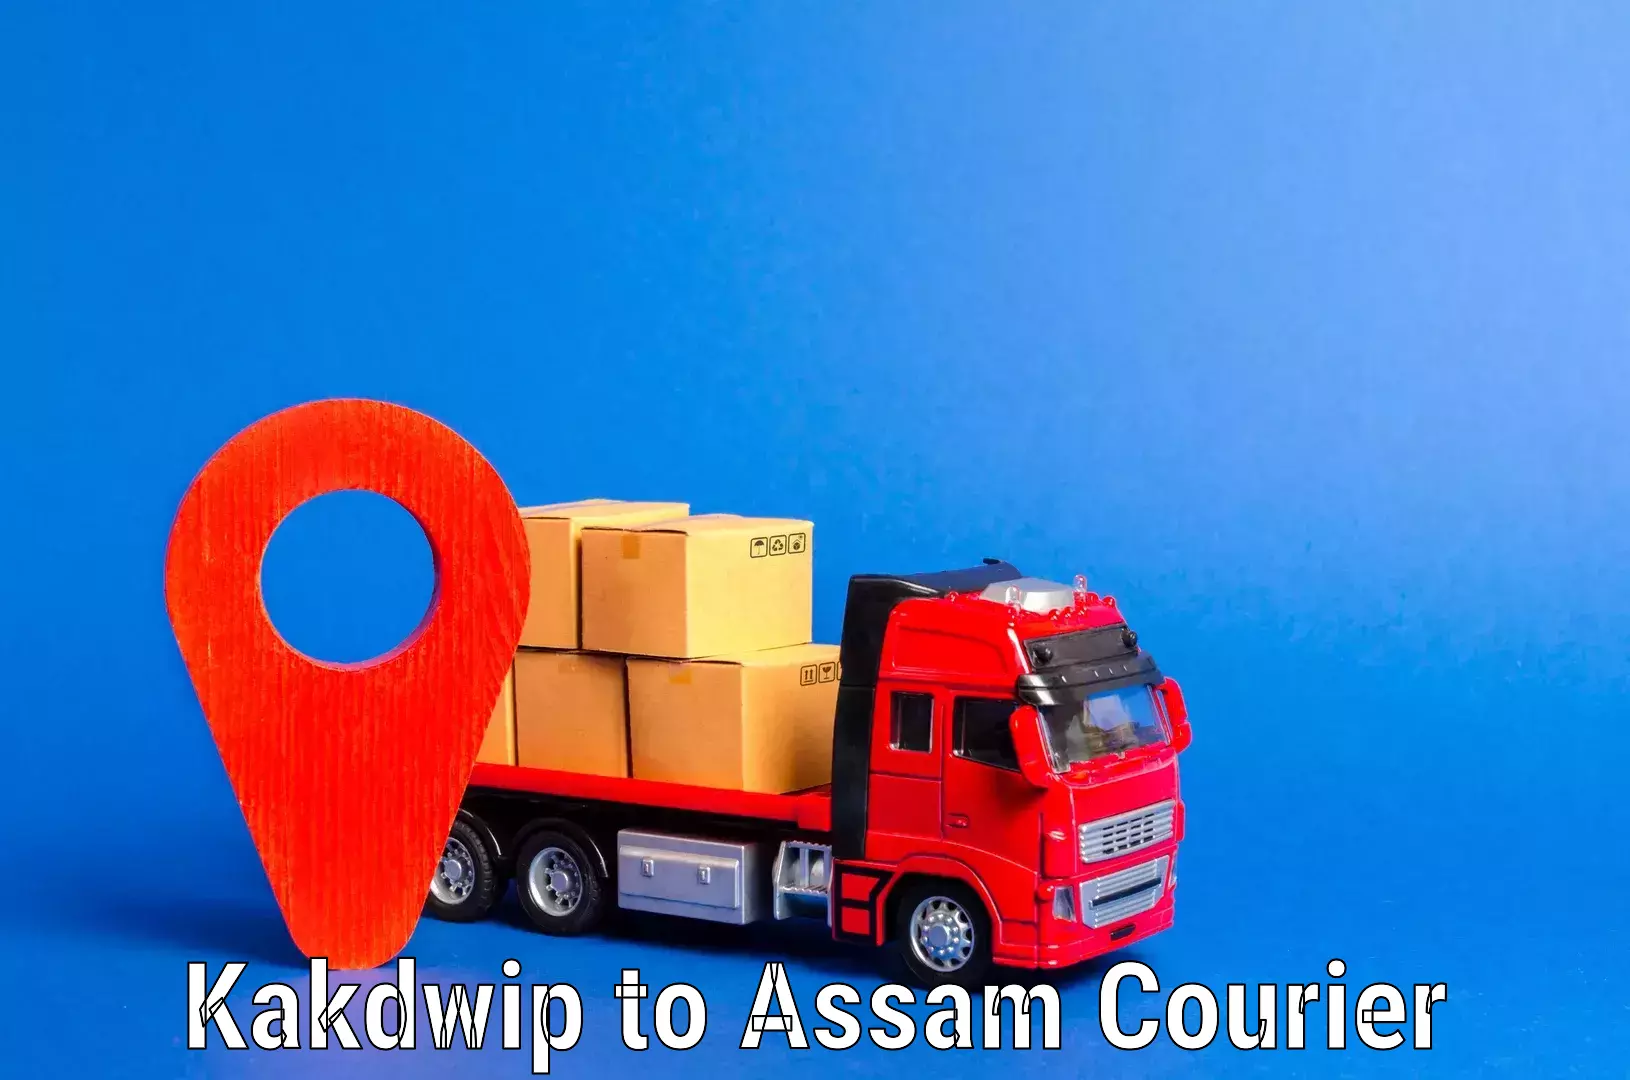 Household goods transport Kakdwip to Assam